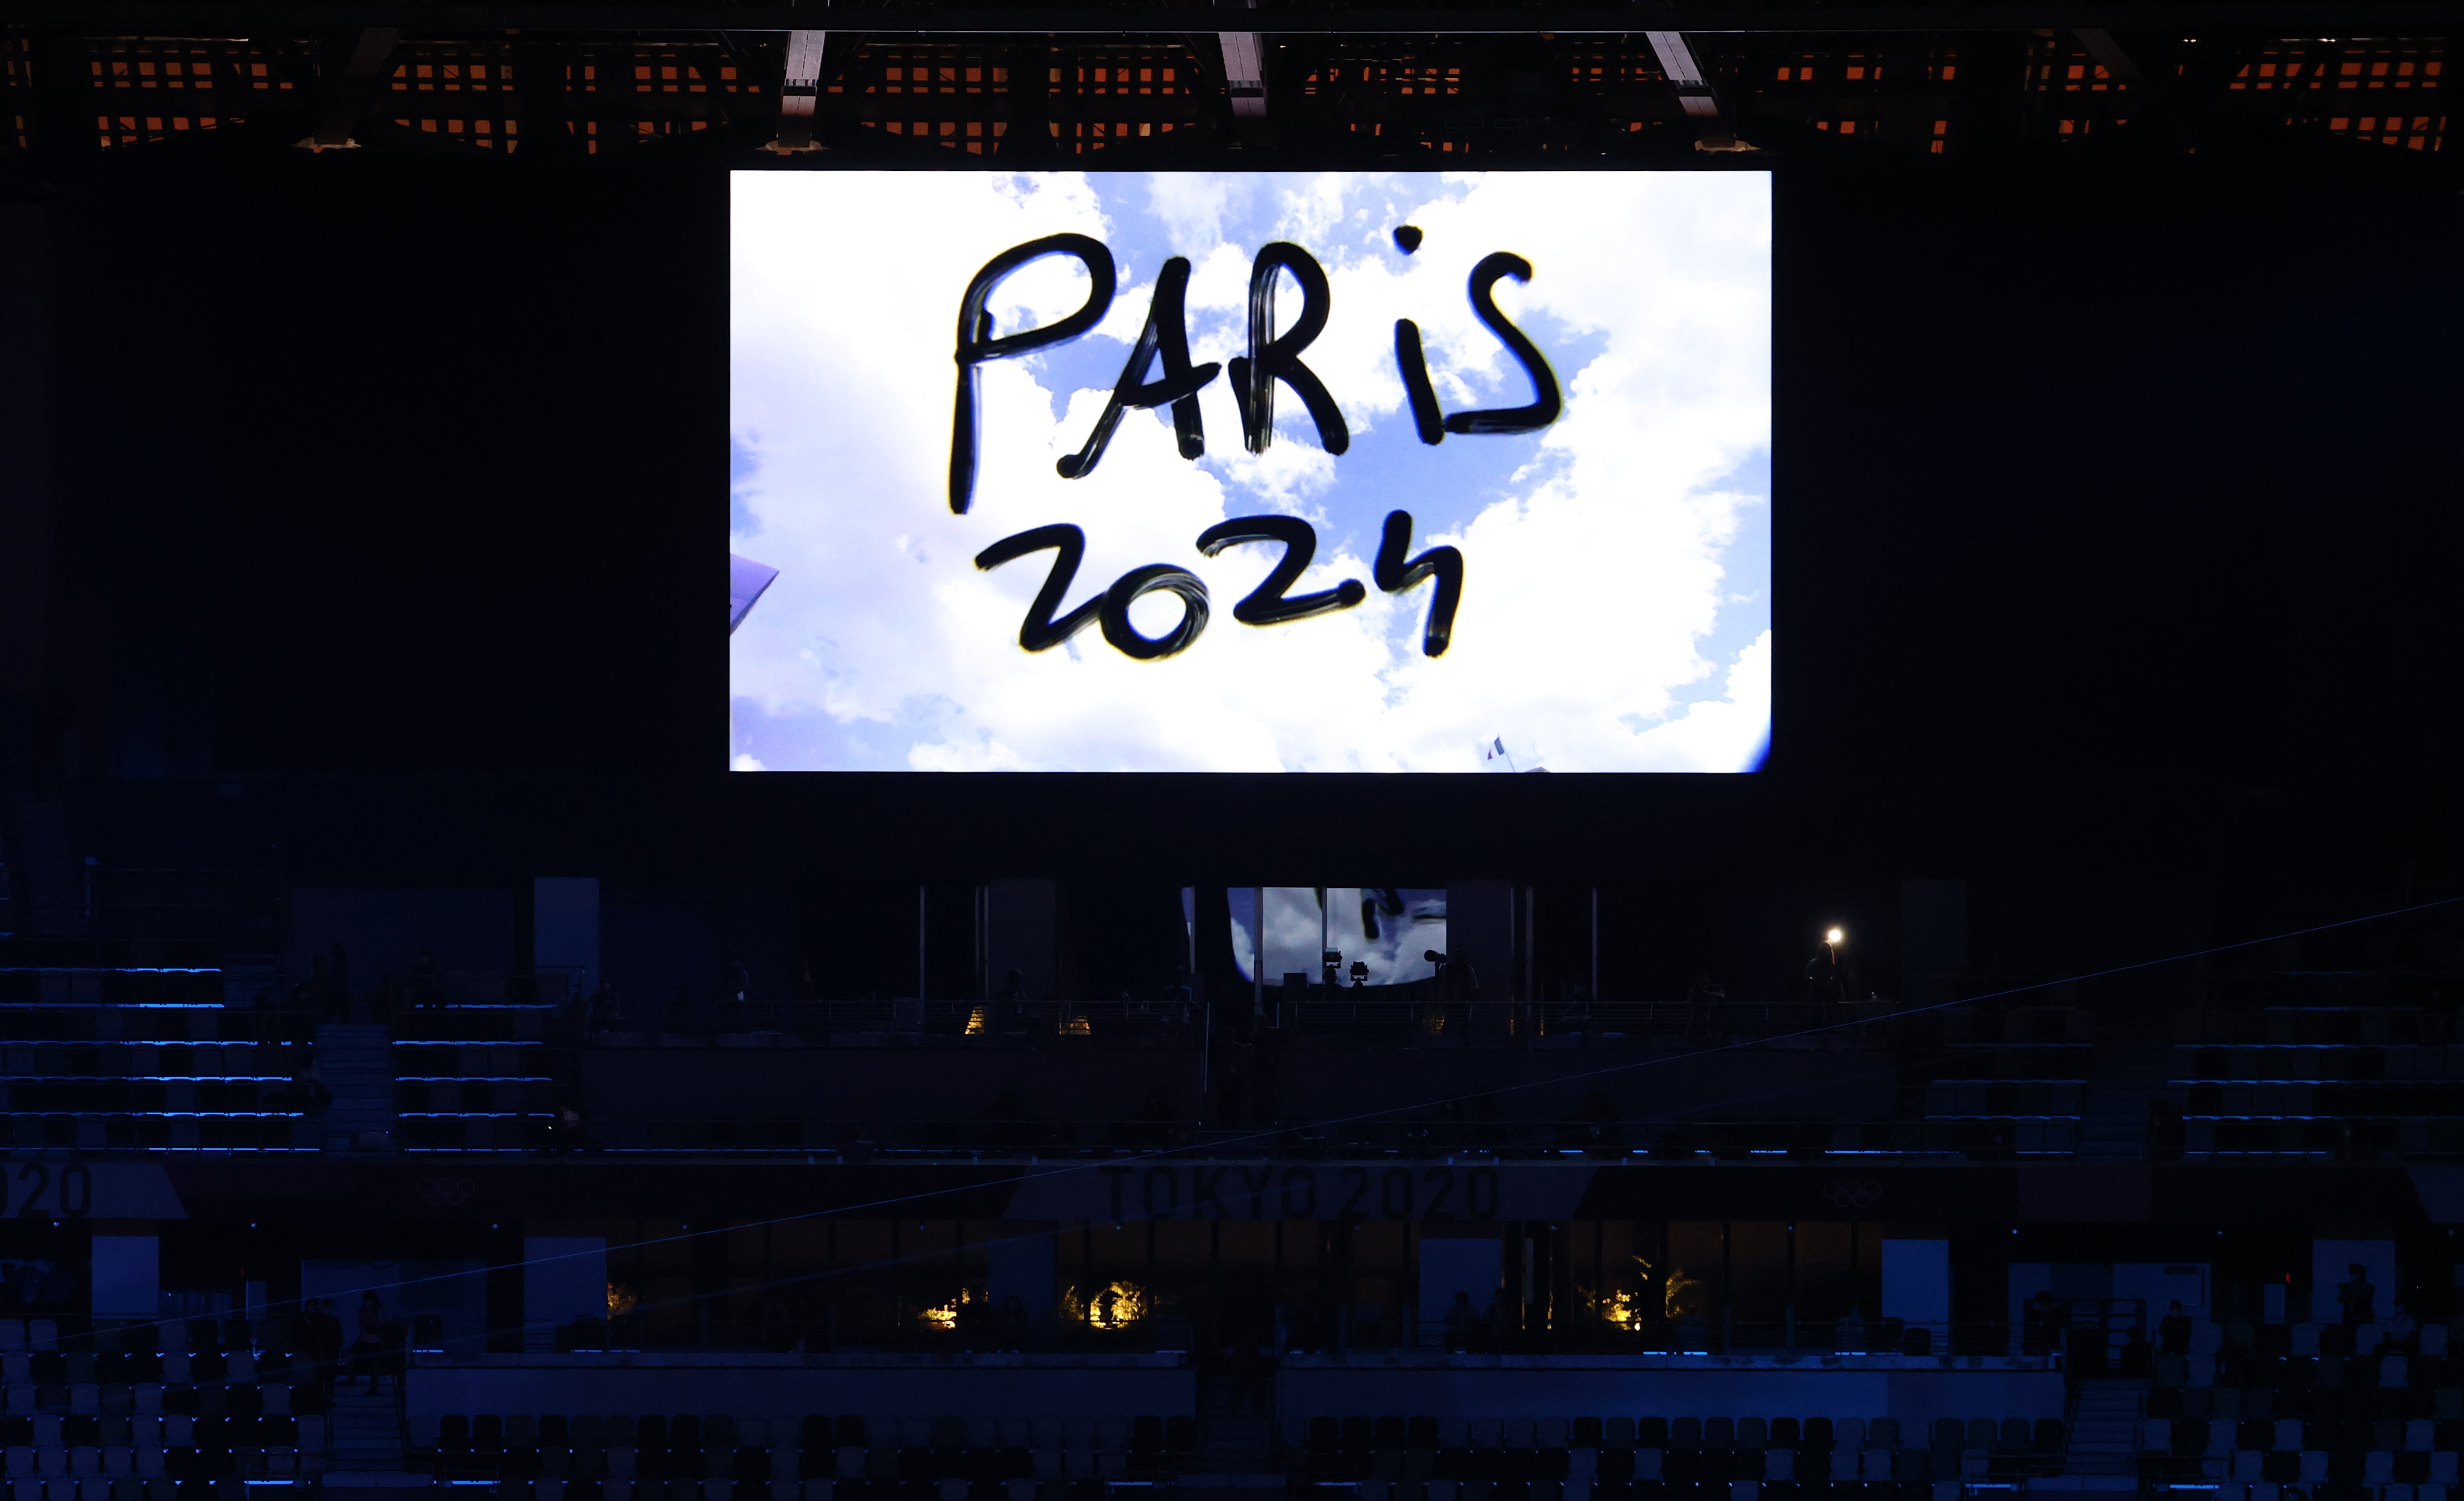  8일 열린 2020 도쿄올림픽 폐회식에서 2024 하계올림픽 개최지인 프랑스 파리의 홍보 영상이 상영되는 모습. [사진출처: 연합뉴스]